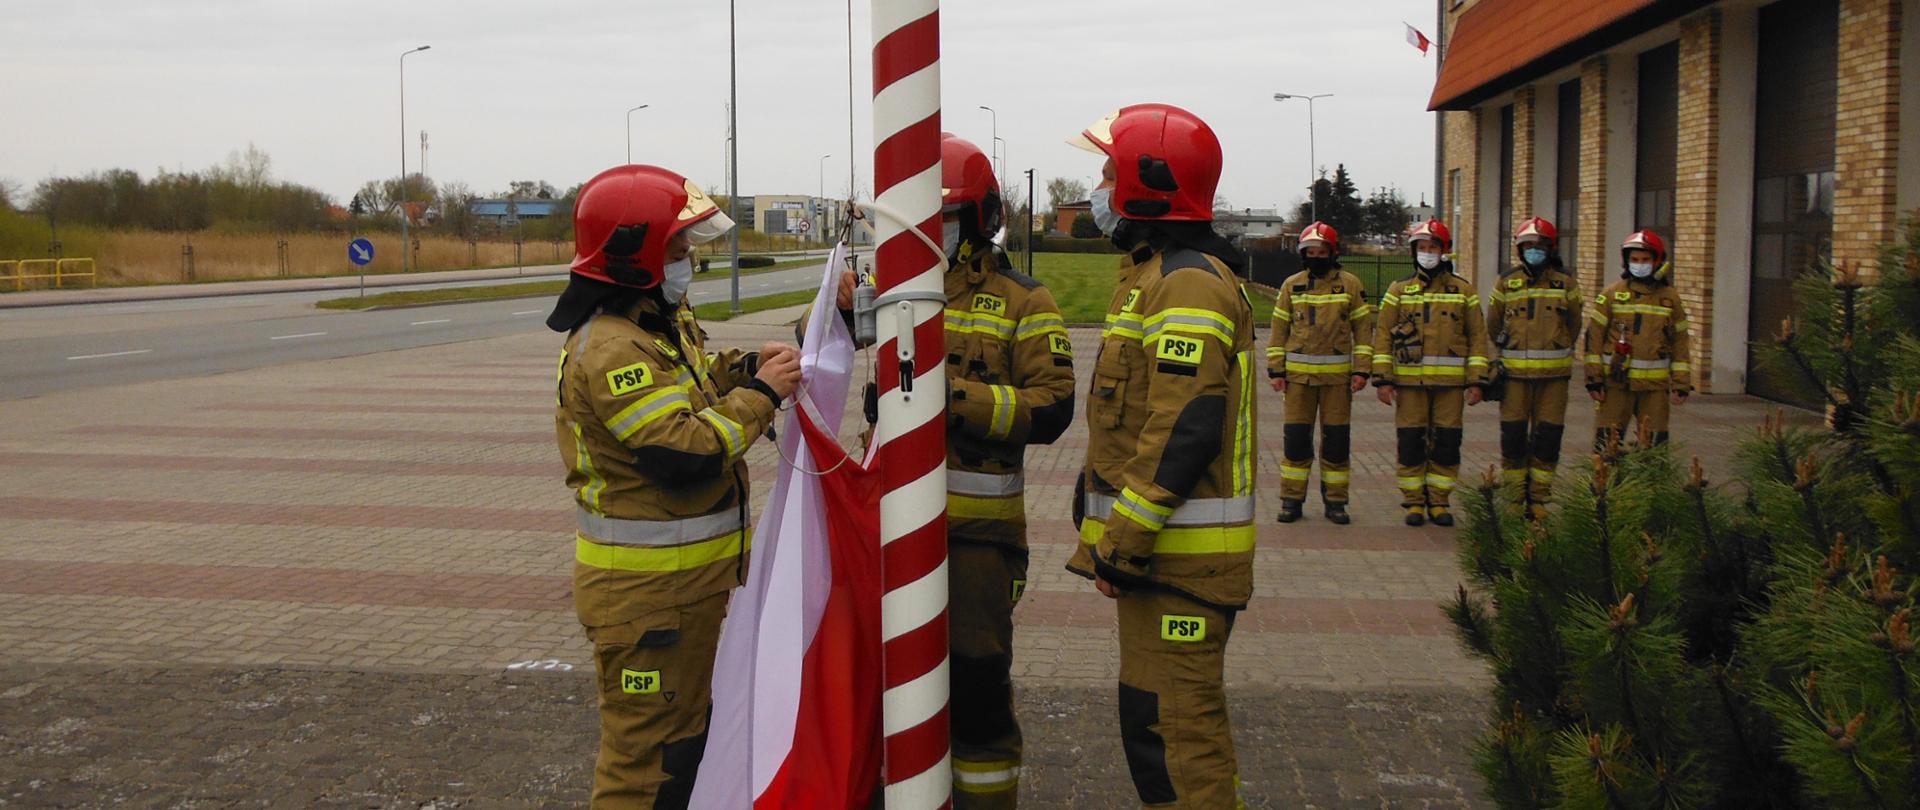 Trzech strażaków mocuje flagę państwowa do masztu, W oddali strażacy ustawieni w rzędzie wzdłuż bram garażowych